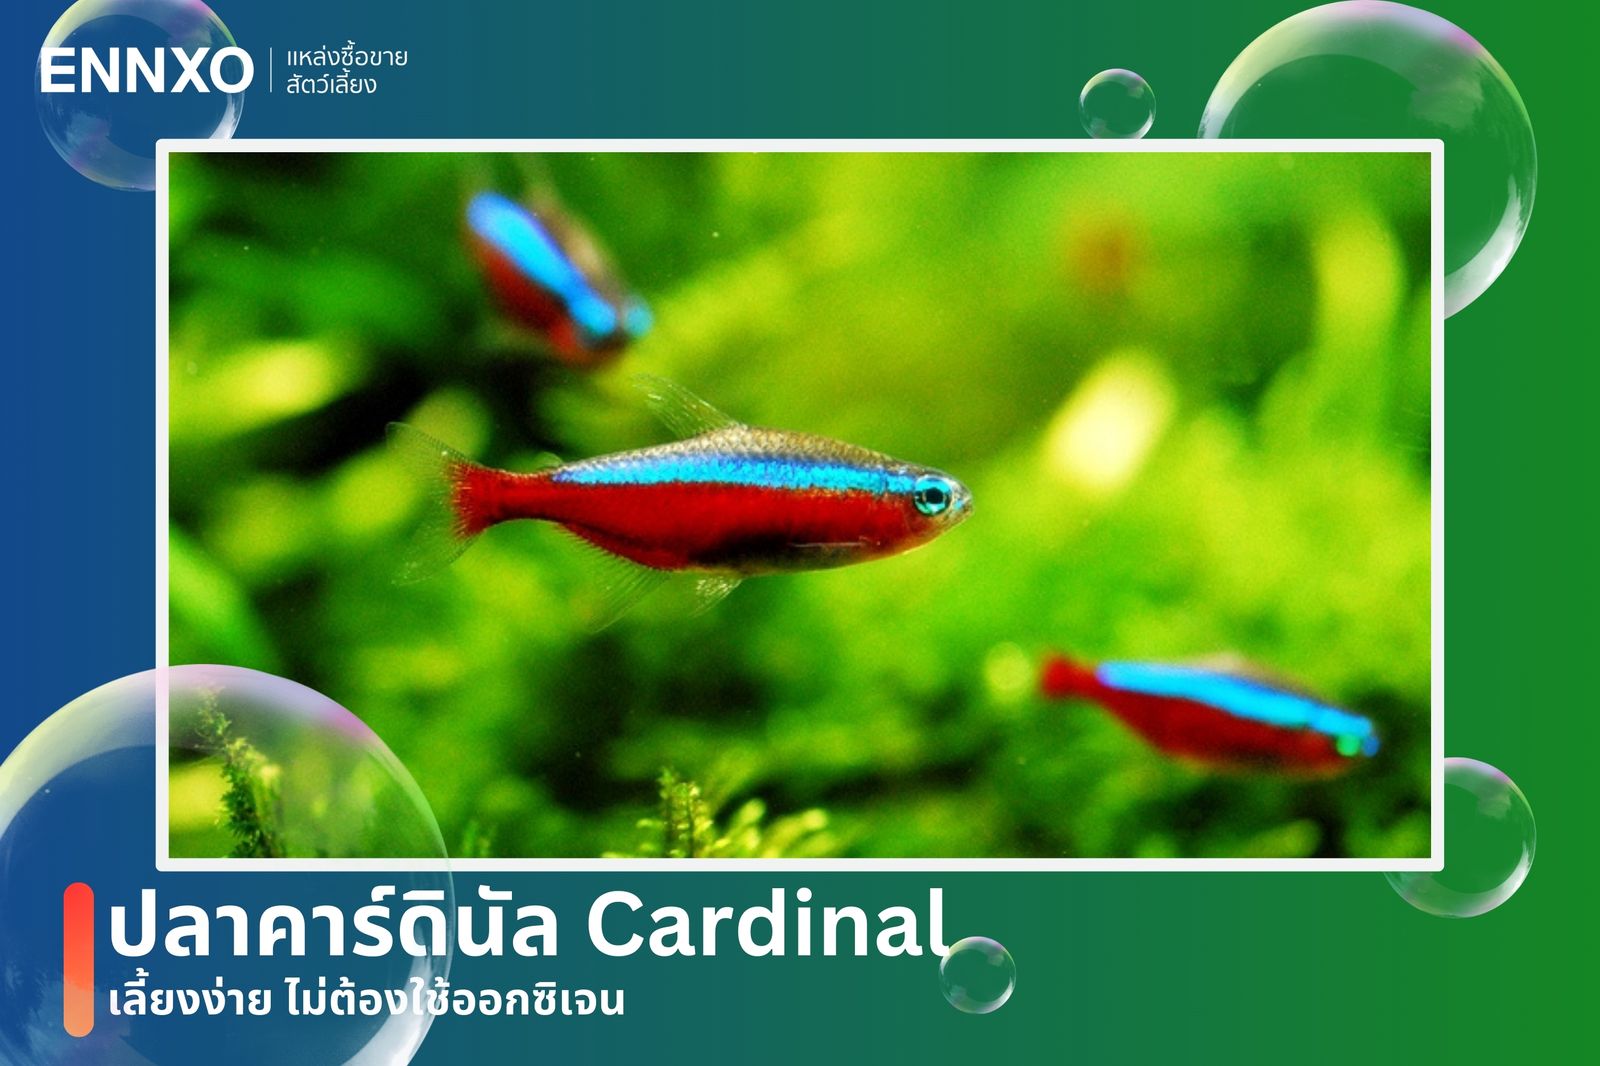 ปลาคาร์ดินัล โดดเด่นด้วยสีฟ้านีออนกับสีแดงสด นิยมเลี้ยงเป็นฝูง